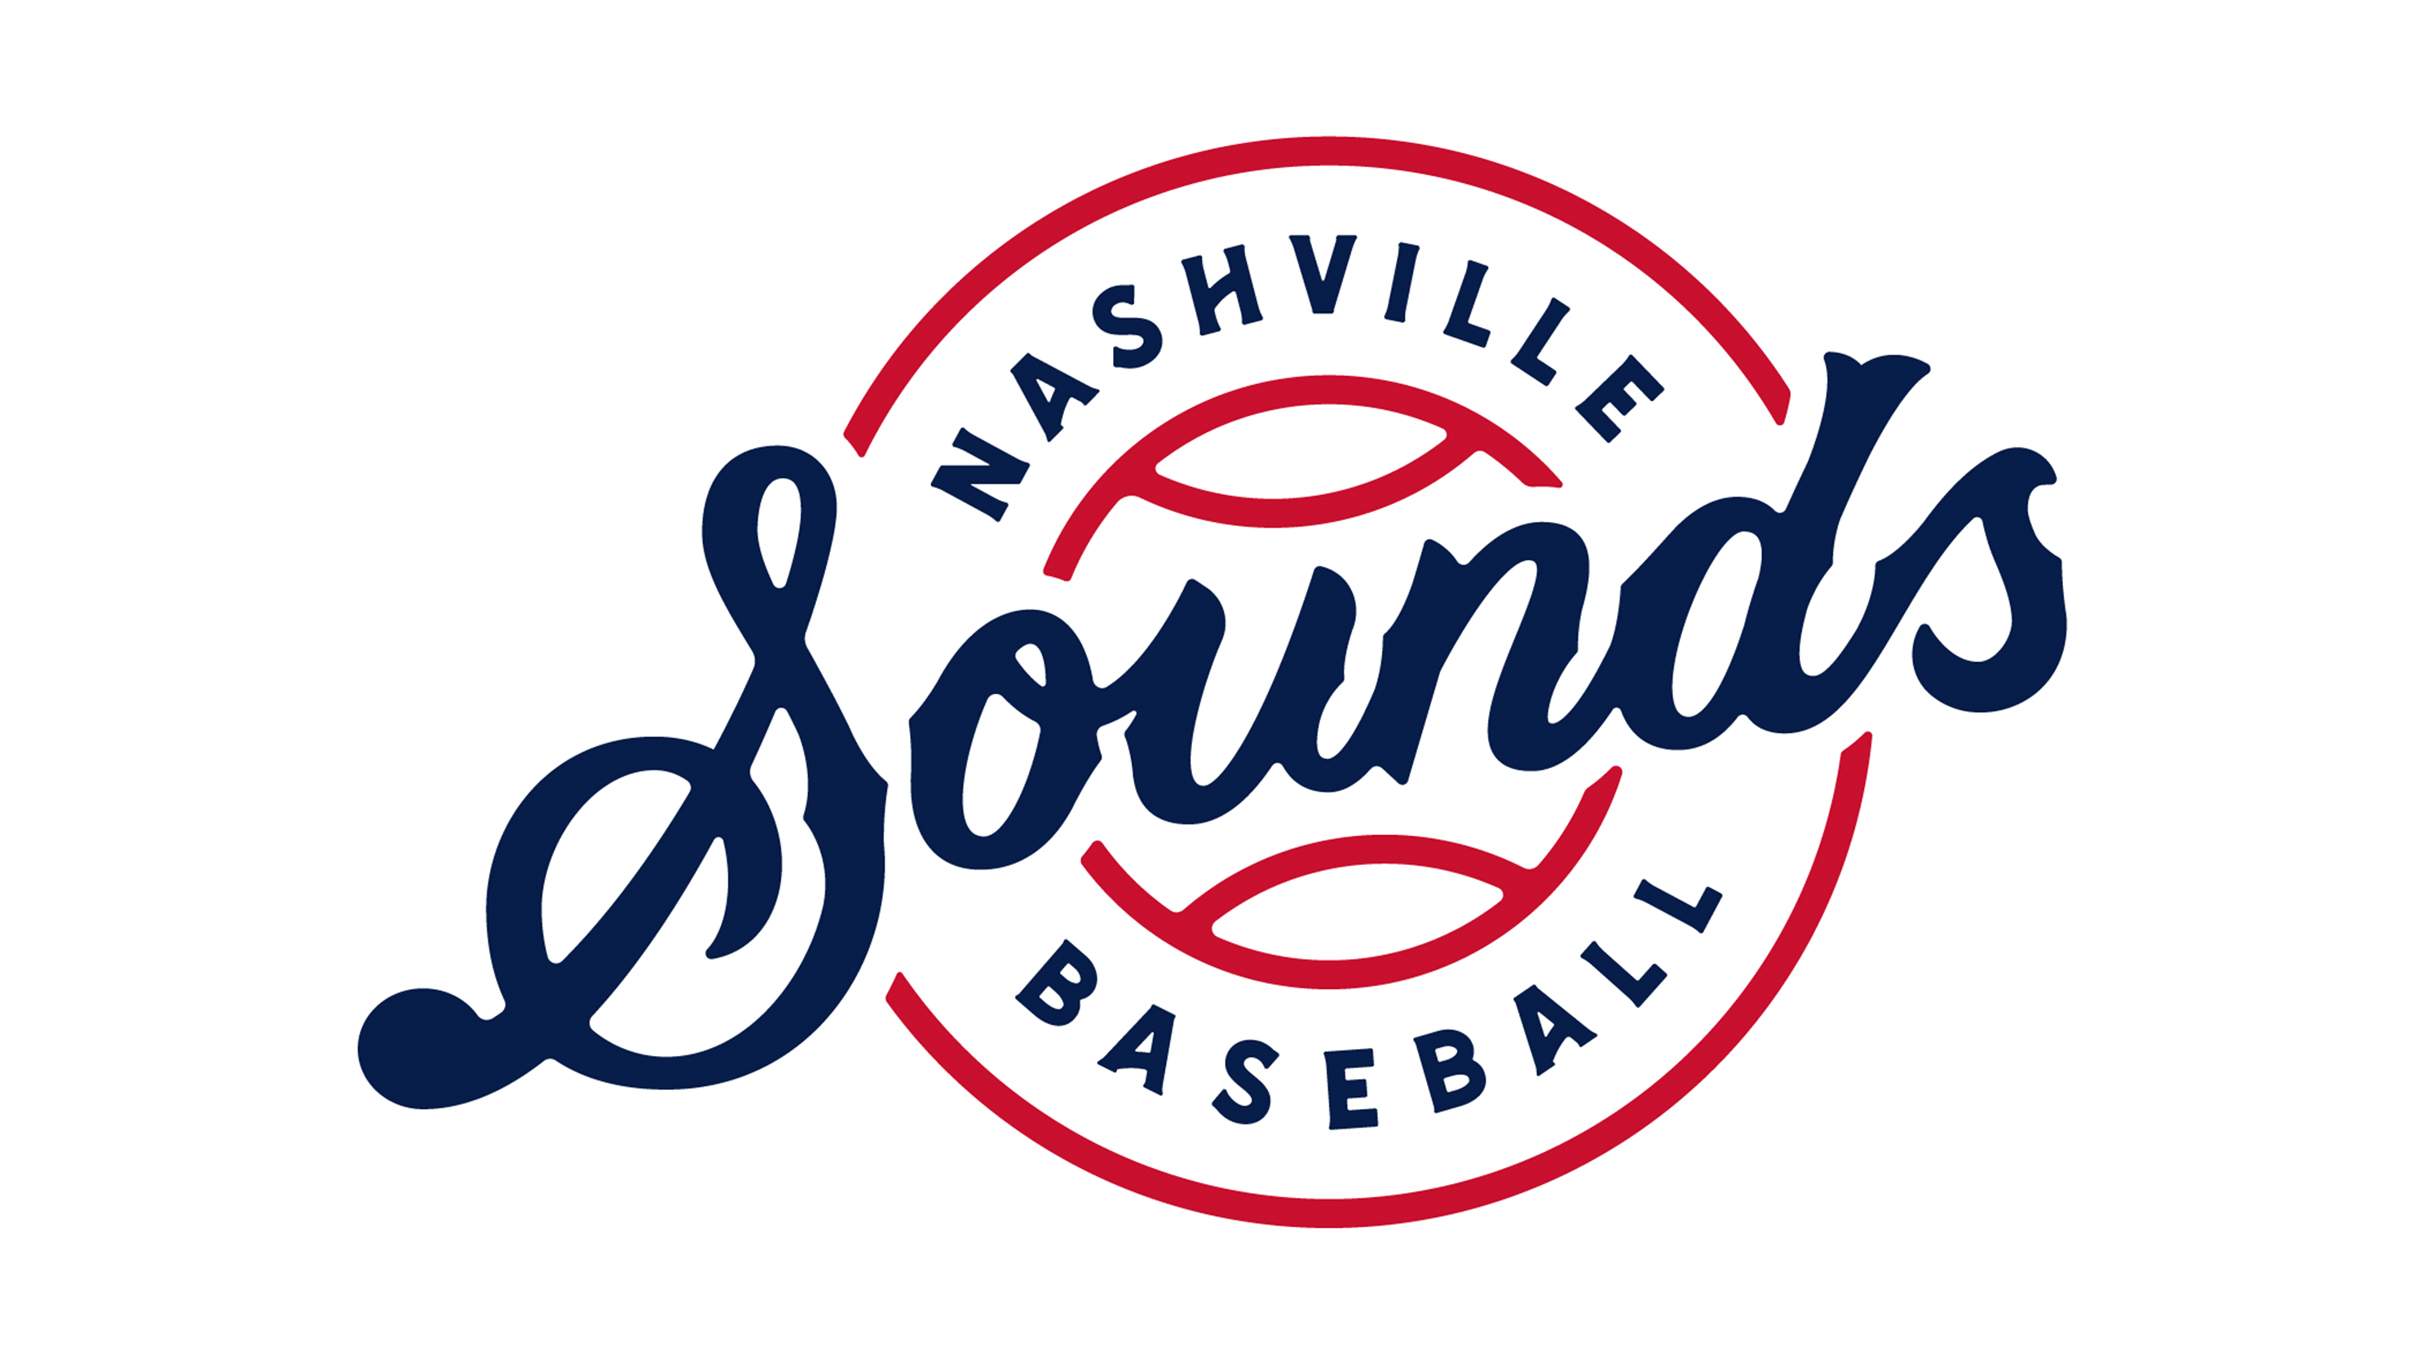 Nashville Sounds vs. Iowa Cubs